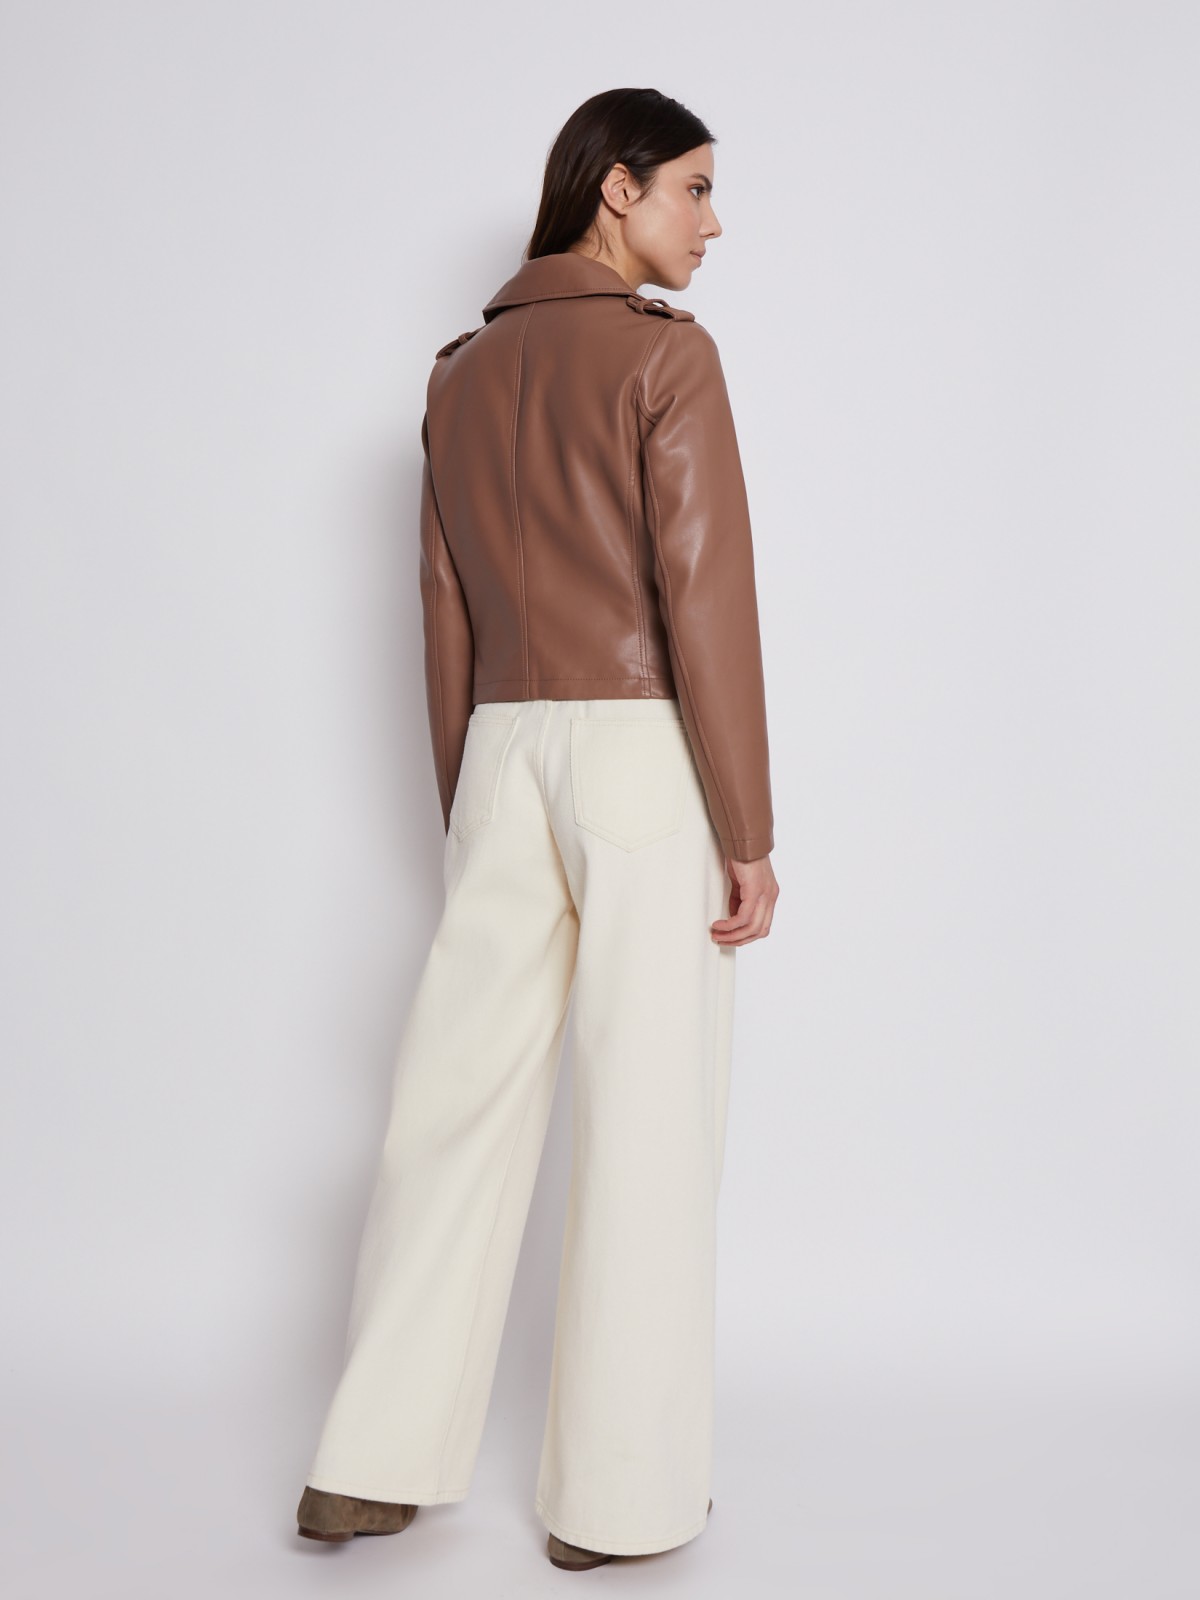 Кожаная куртка-косуха zolla 023215602054, цвет коричневый, размер XS - фото 5